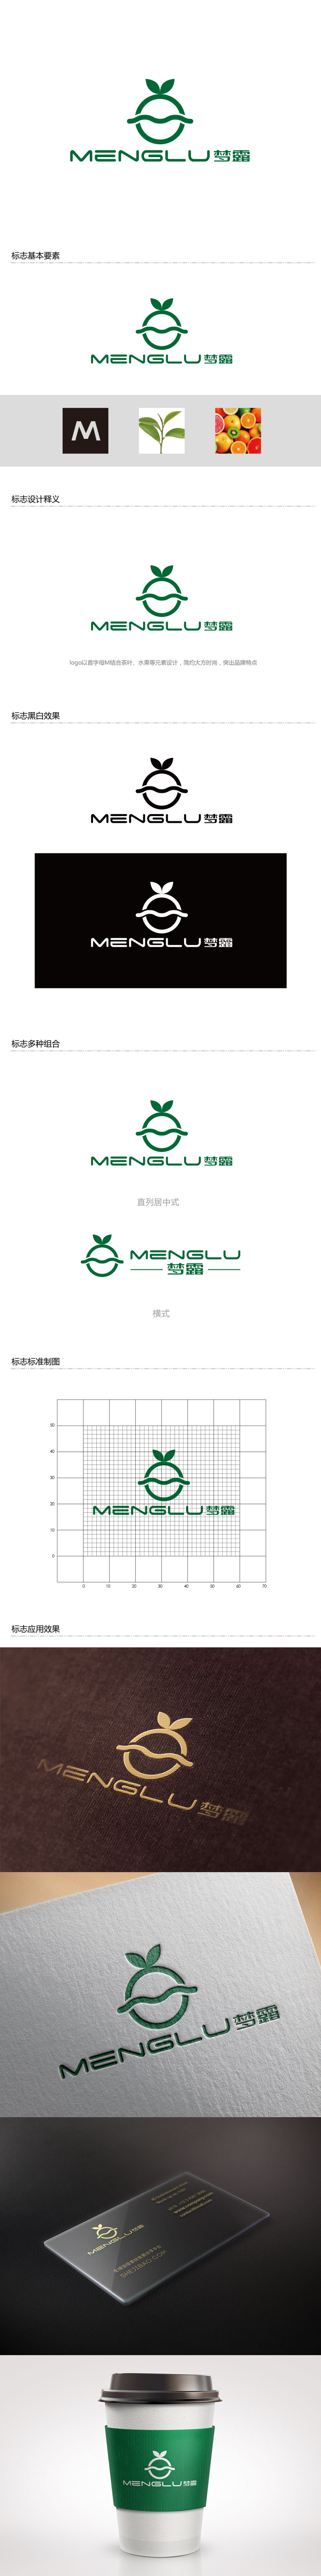 孙金泽的梦露logo设计